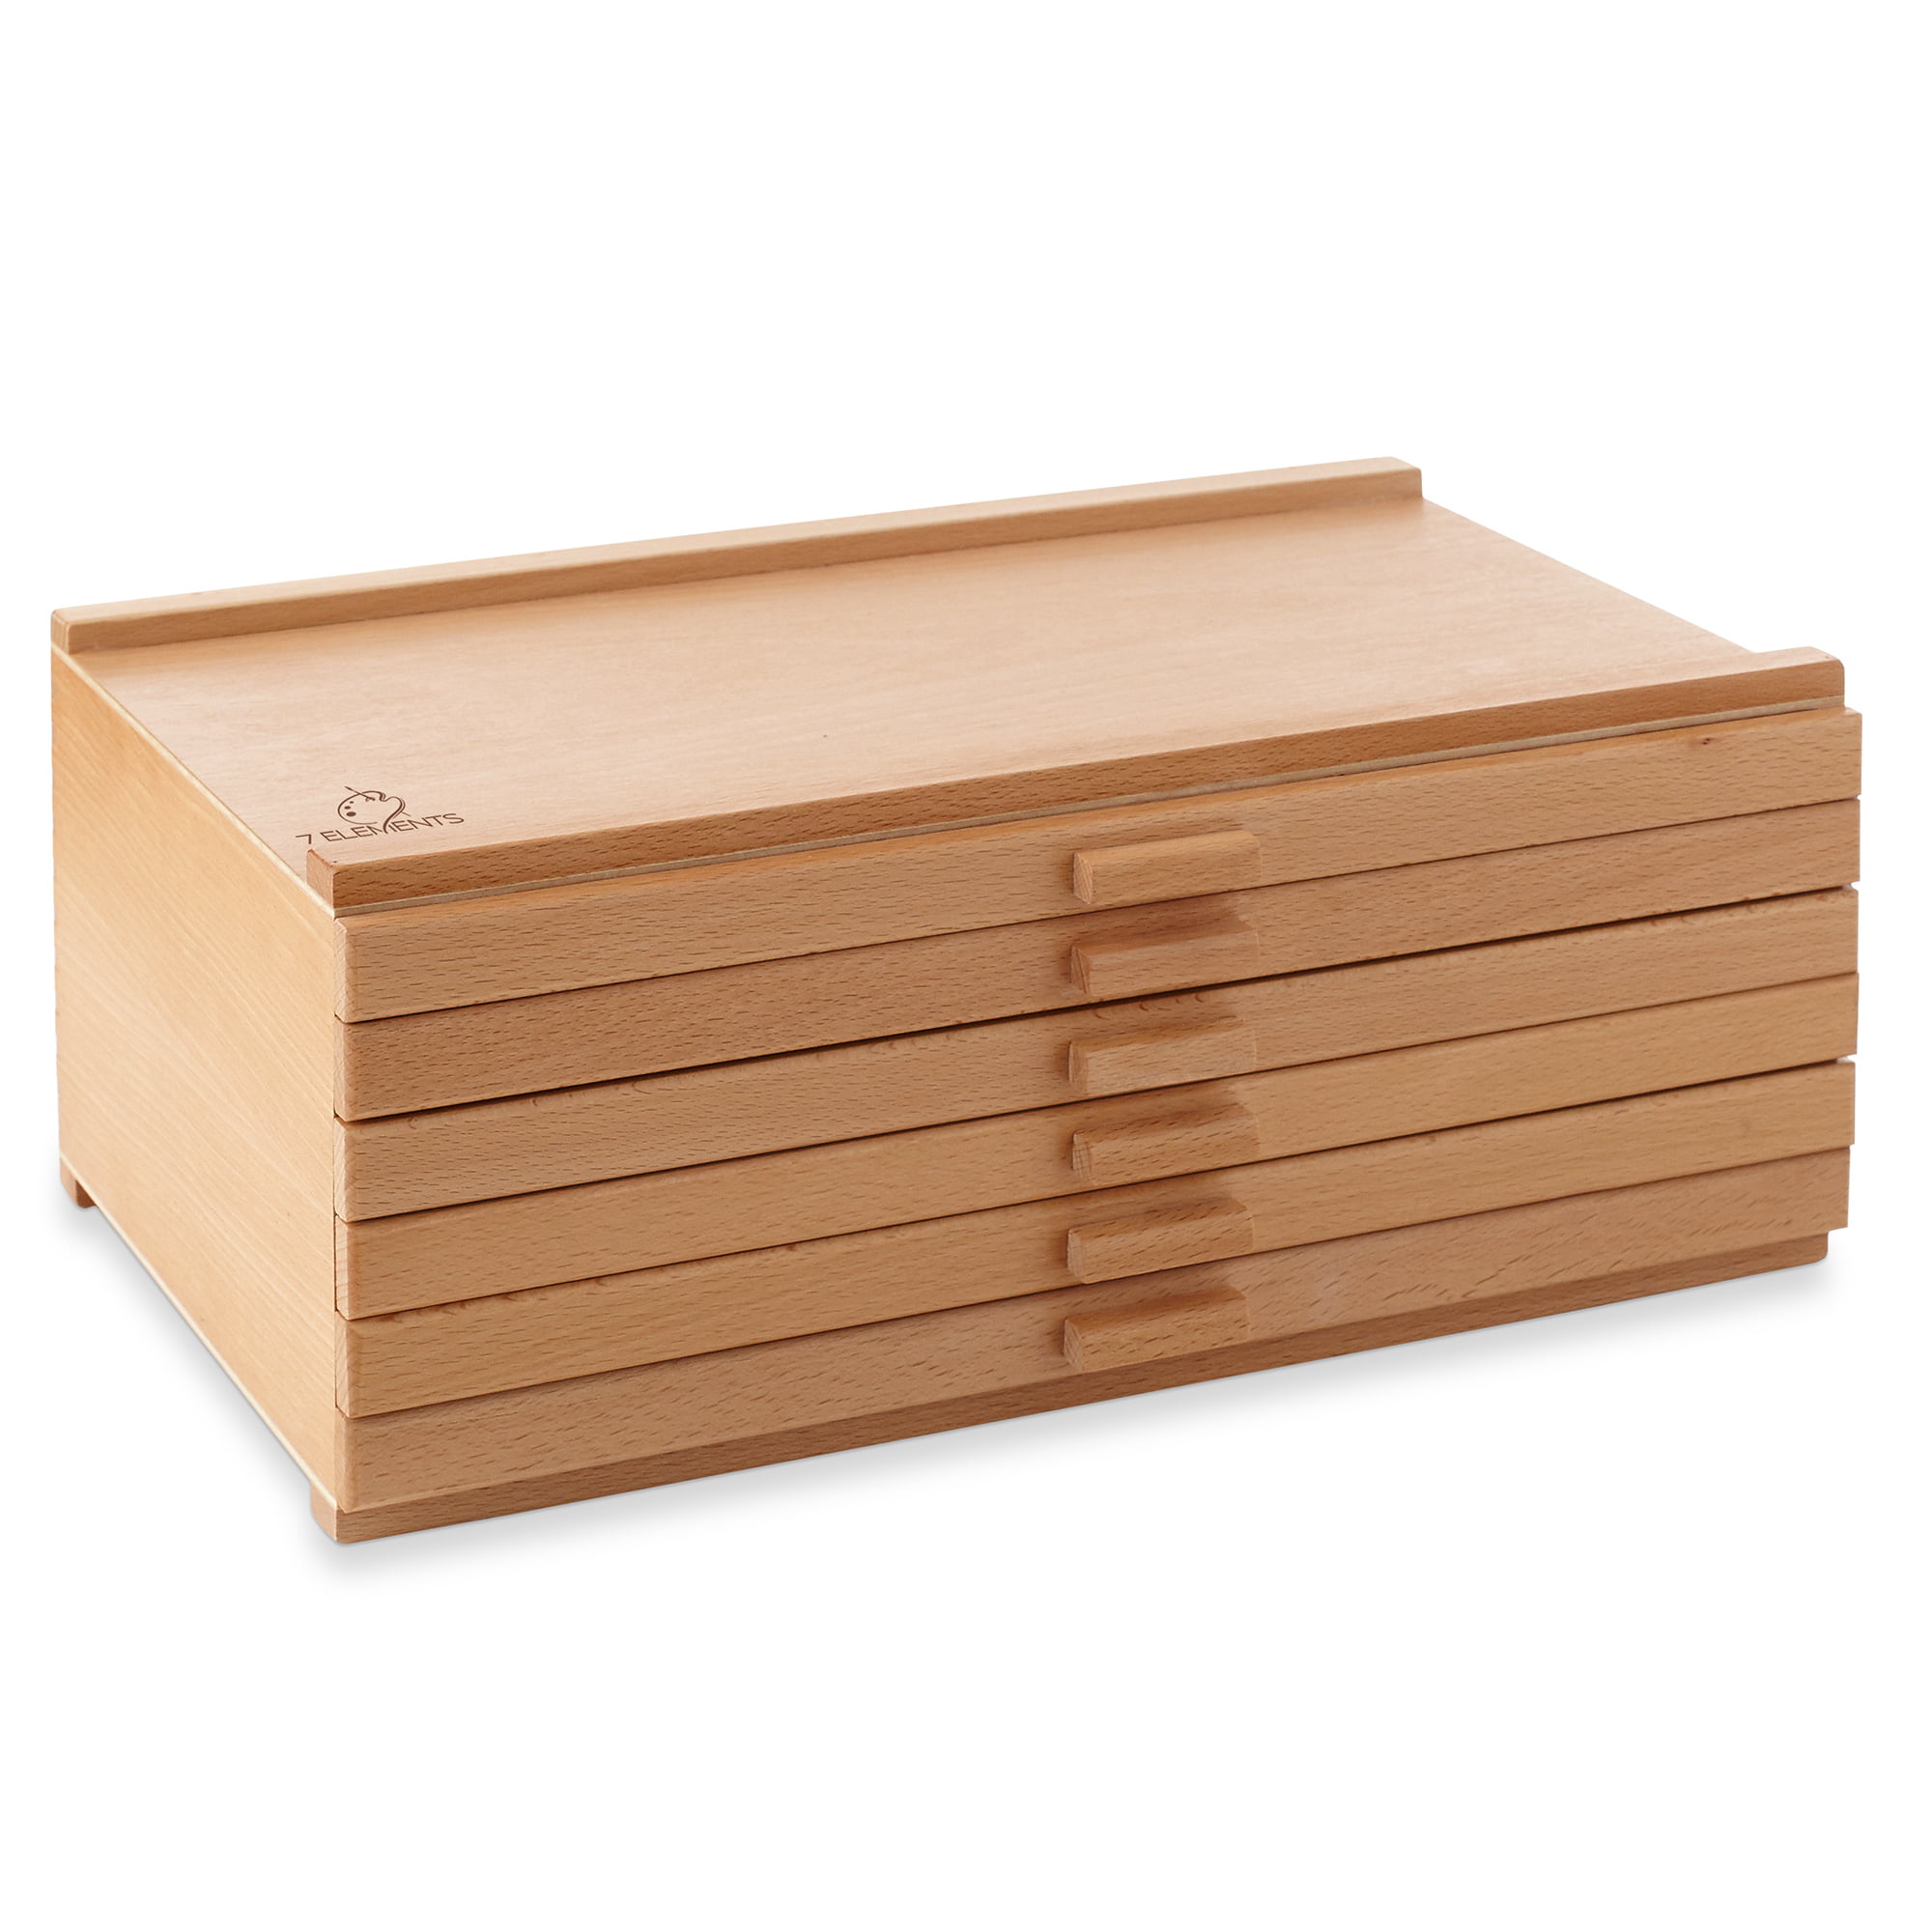 Wooden Pencil Box – BROOK FARM GENERAL STORE